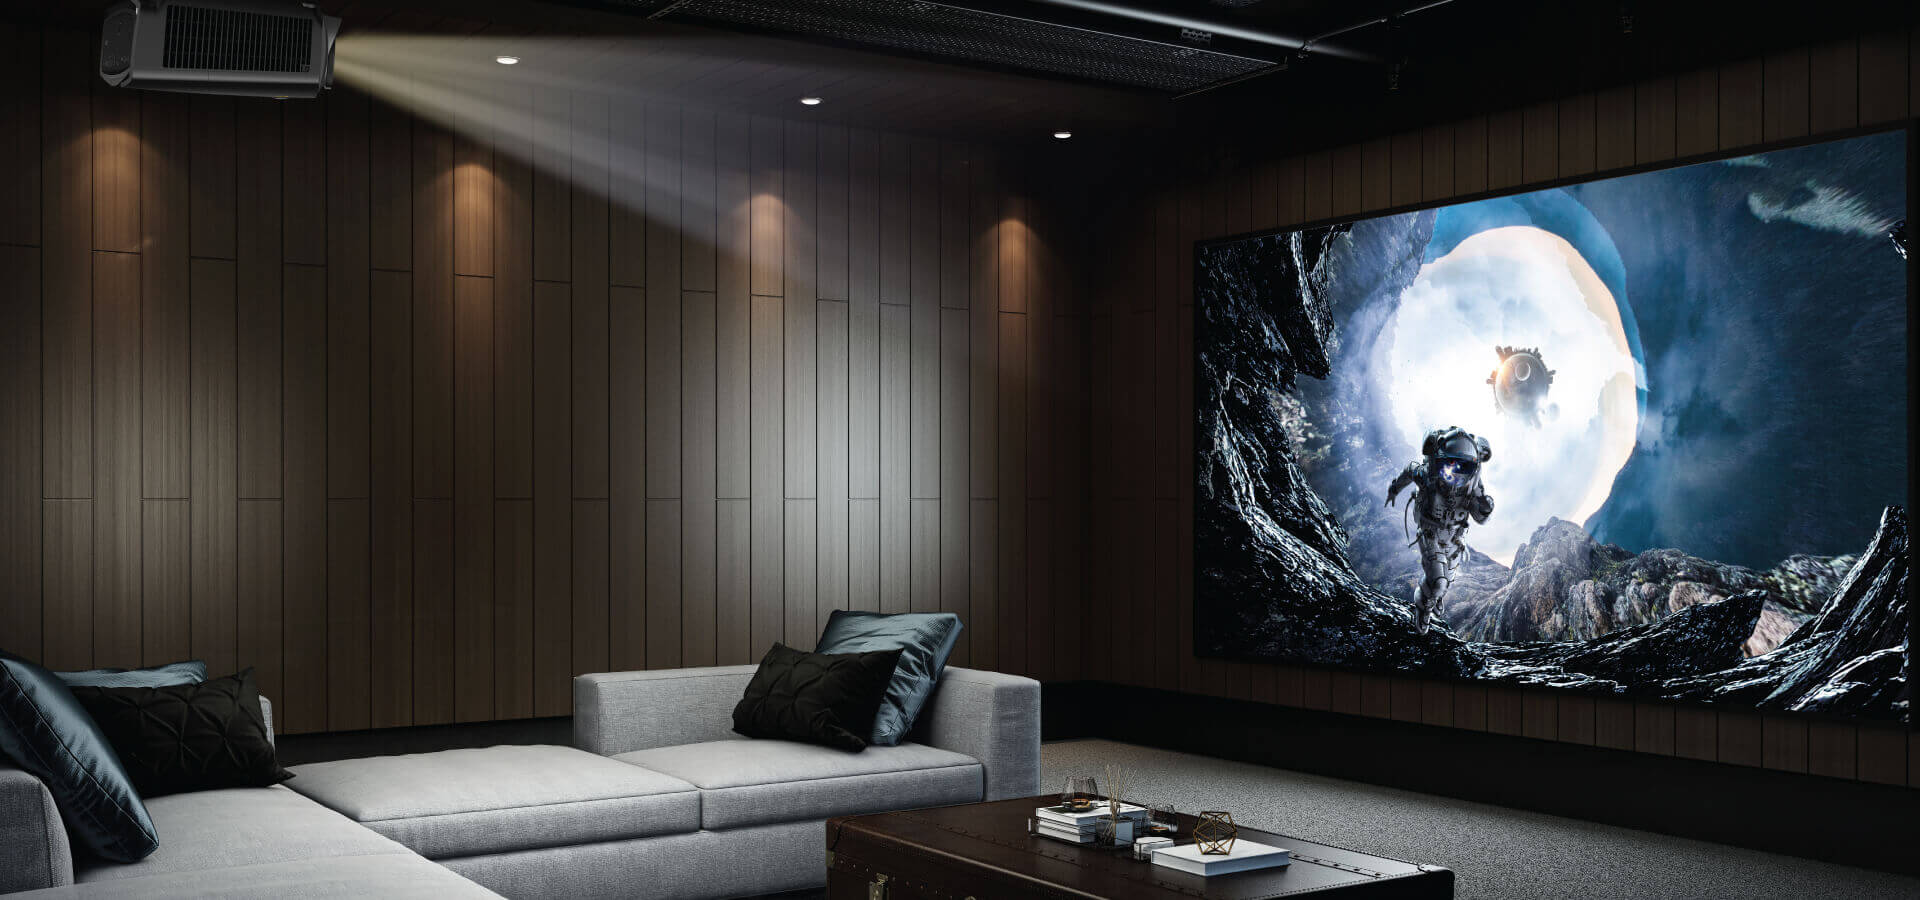 Ozvučenie obývačky - odporúčame vymeniť televízor za kvalitný projektor